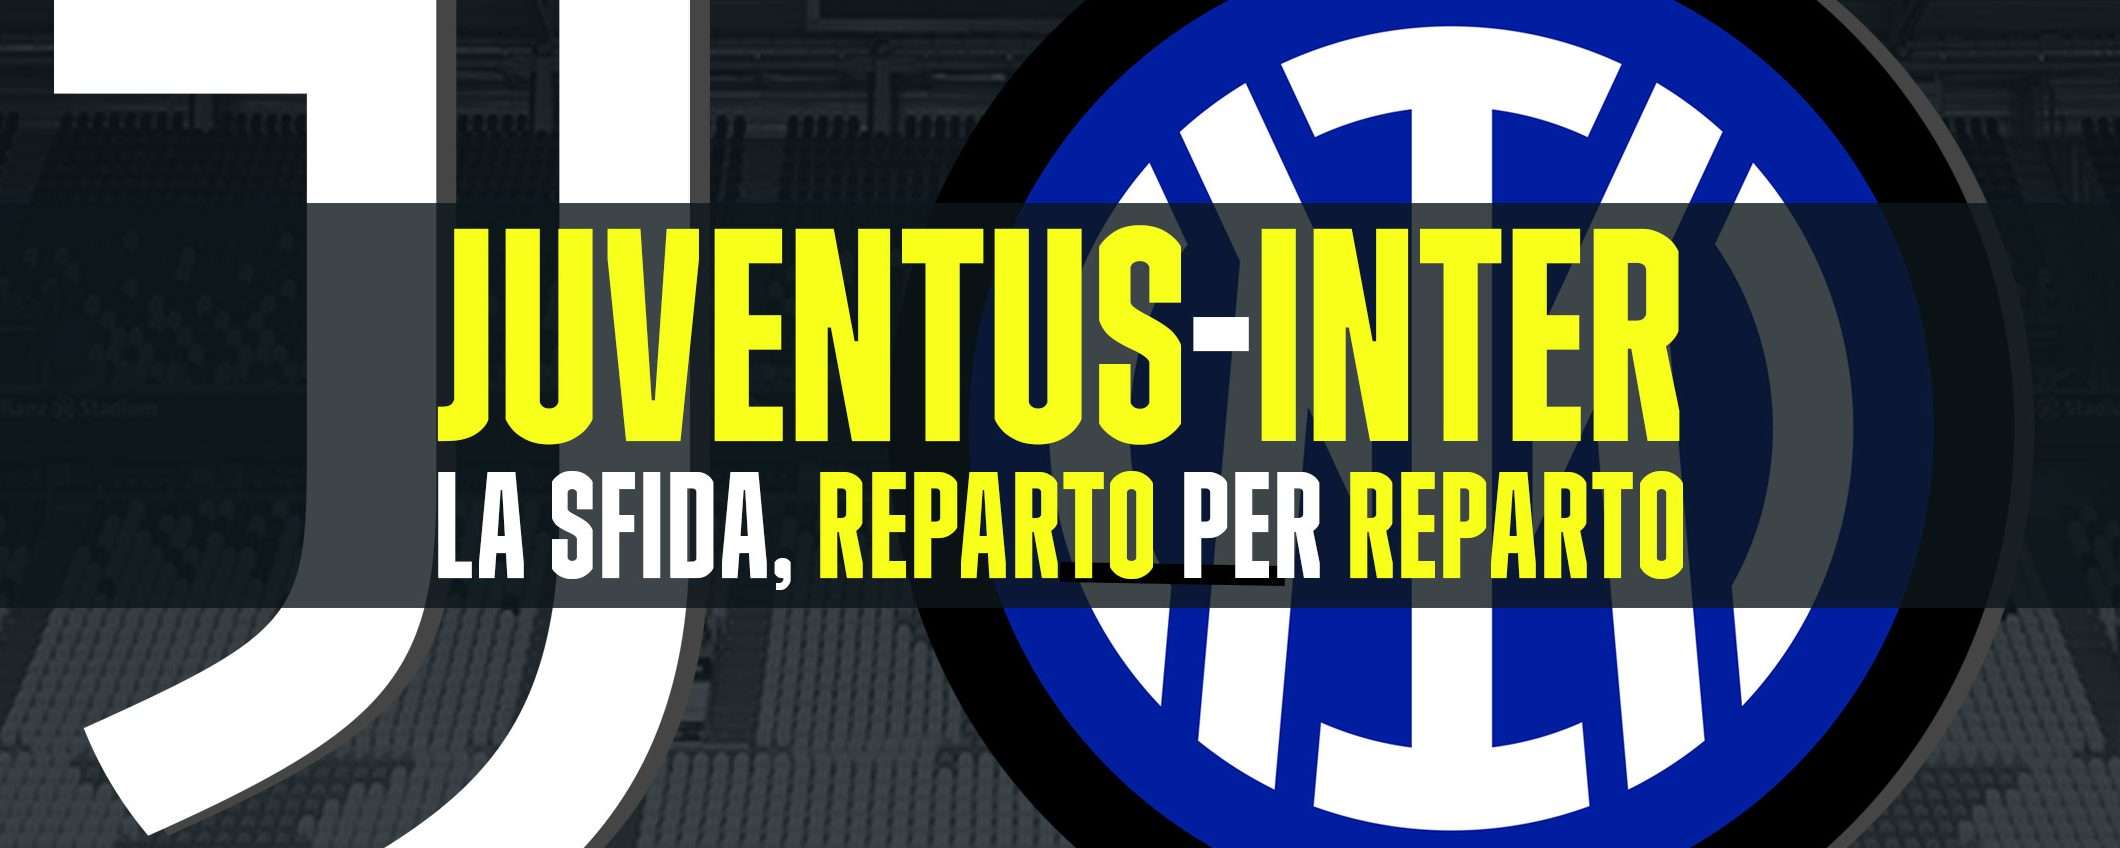 Juventus-Inter: il derby d'Italia, reparto per reparto